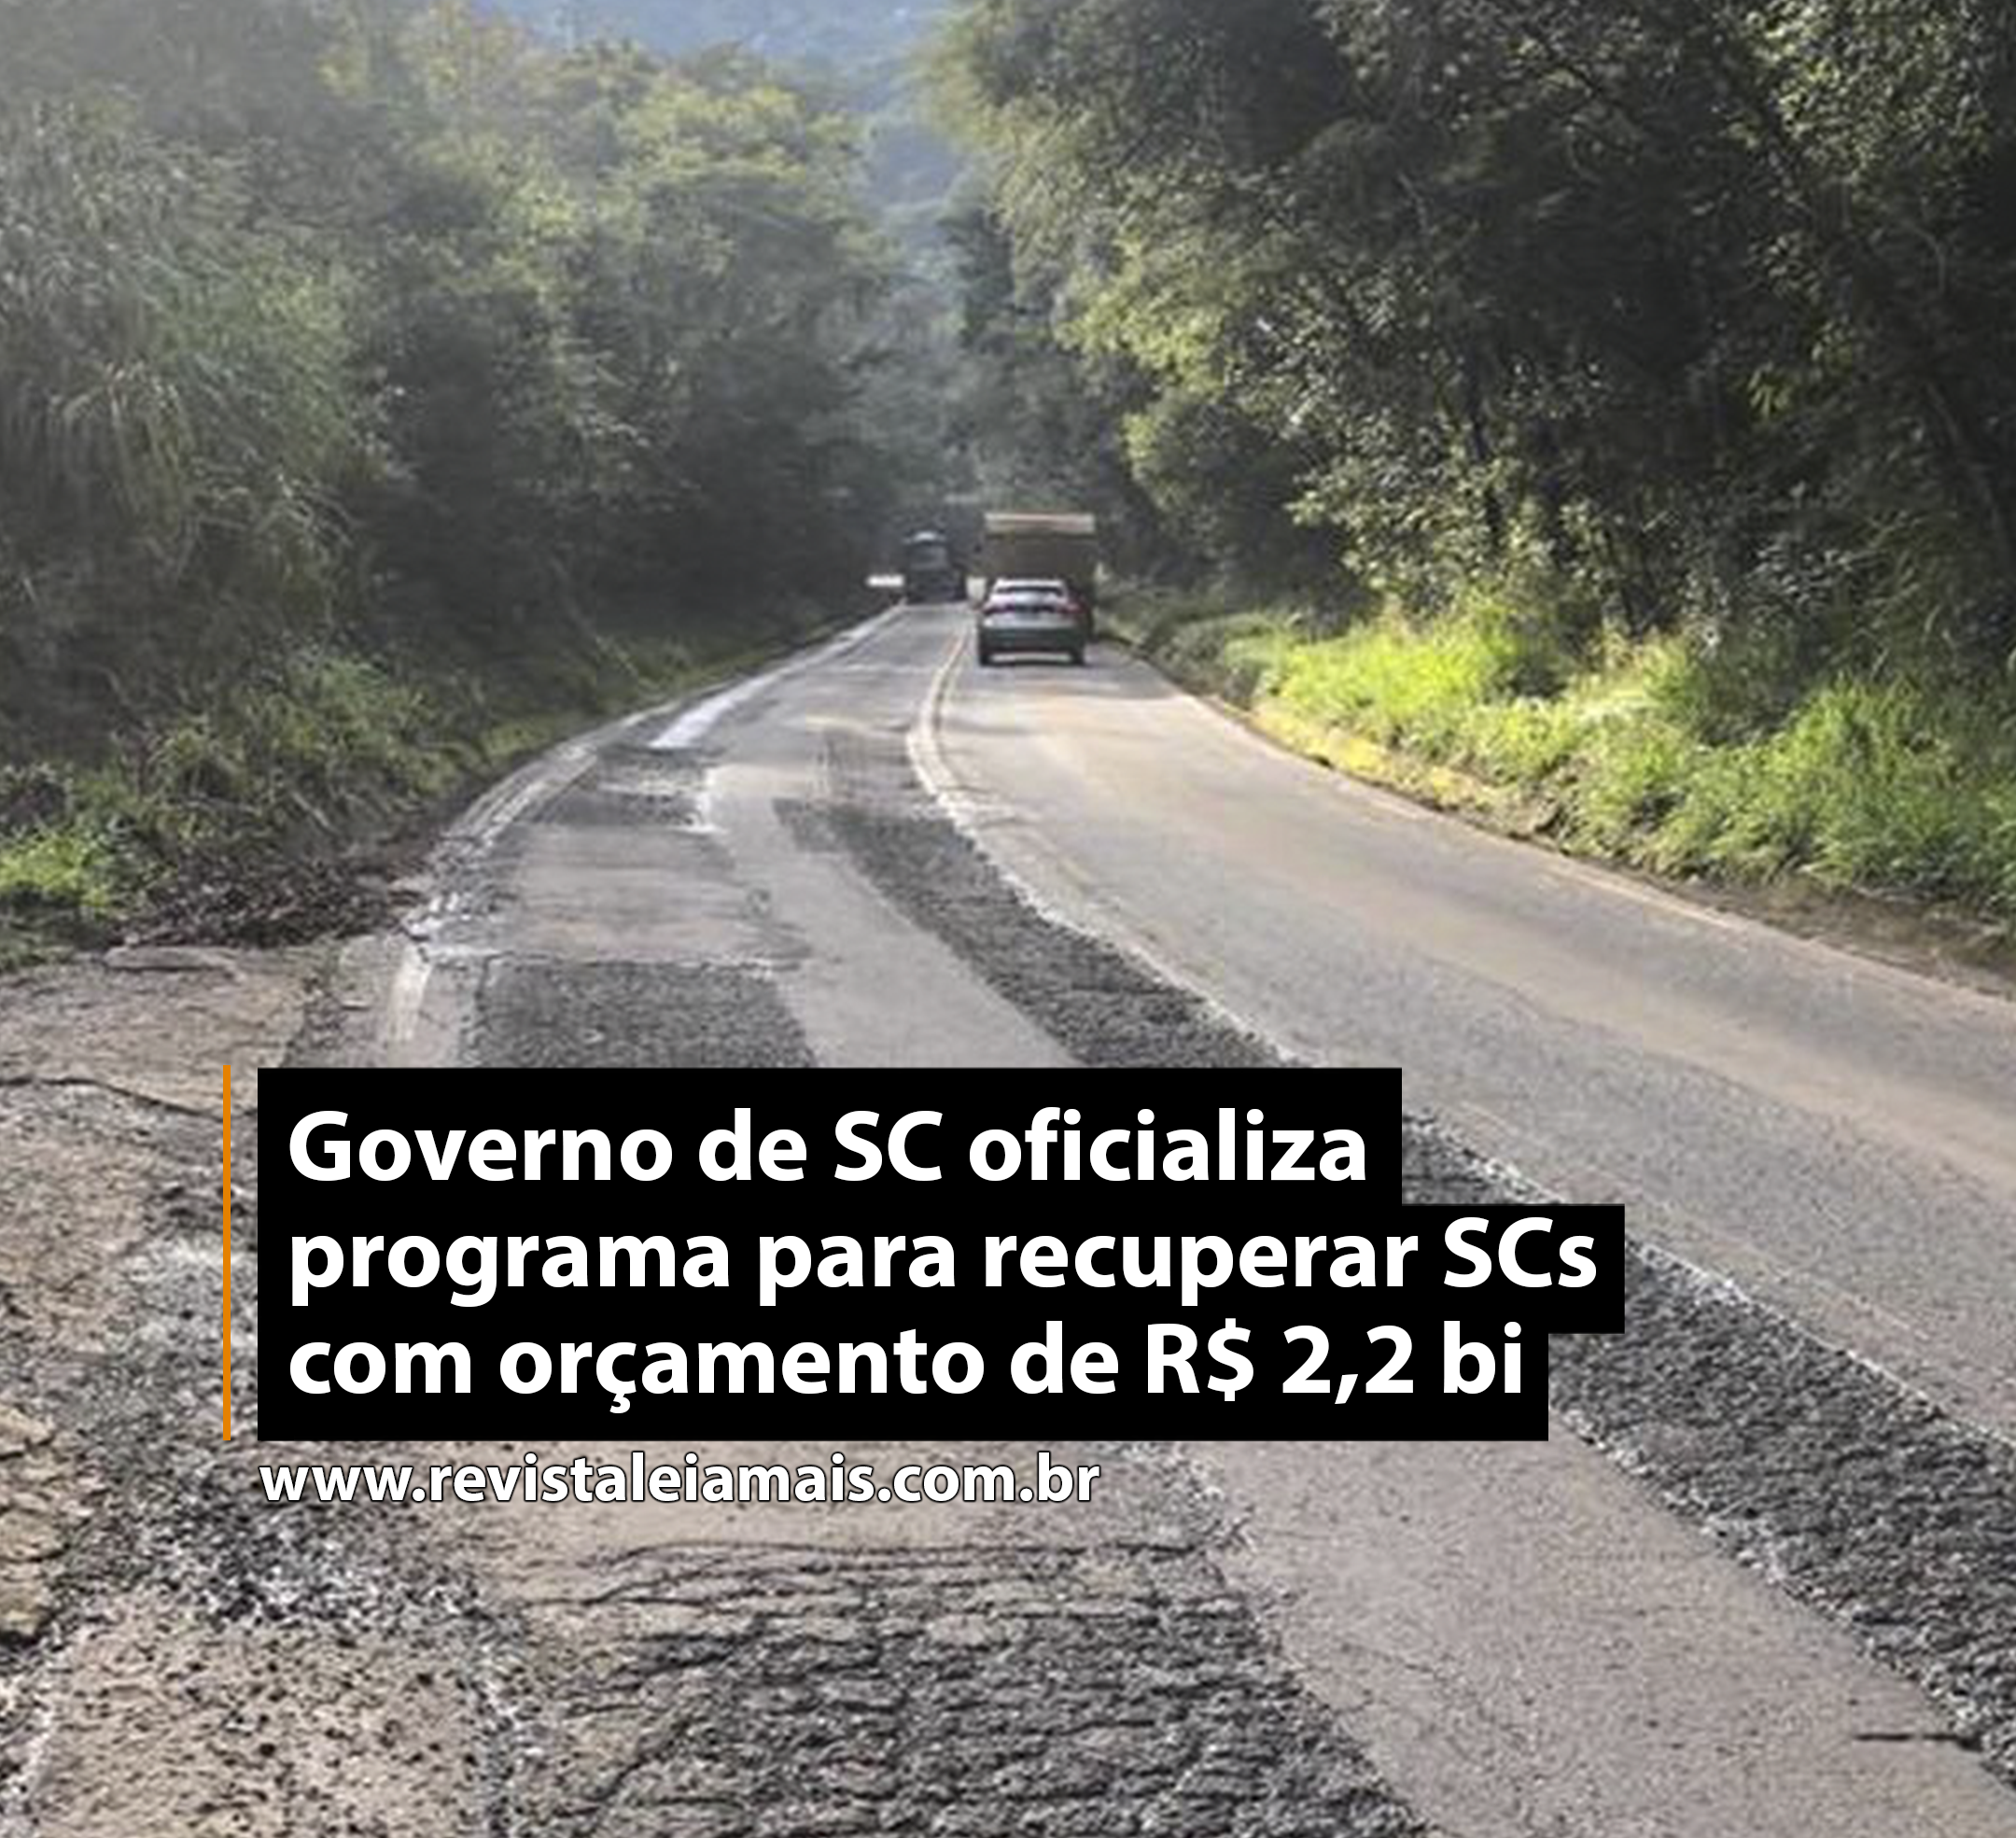 Governo de SC oficializa programa para recuperar SCs com orçamento de R$ 2,2 bi